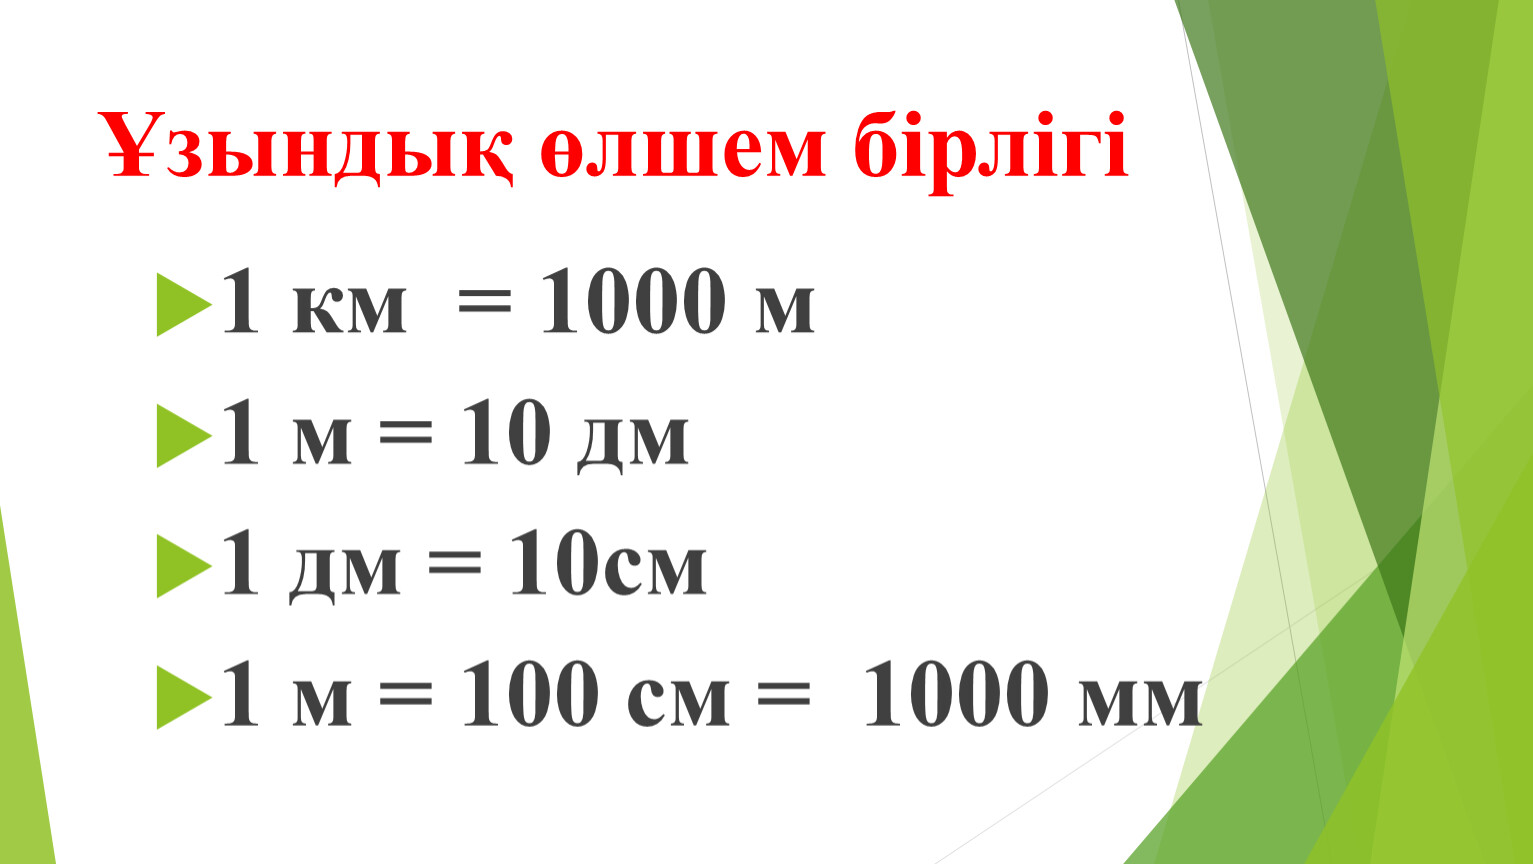 Г кг в г дм3. 1 М = 10 дм 1 м = 100 см 1 дм см. 1 М = 10 дм, 1дм= 10 см, 1 м= 100 см. 1000 Мм = 100 см = 1 м. 1 Км=1000м 1м=100см 1м=10дм 1дм=10см 1см=10мм 1дм=1000мм.